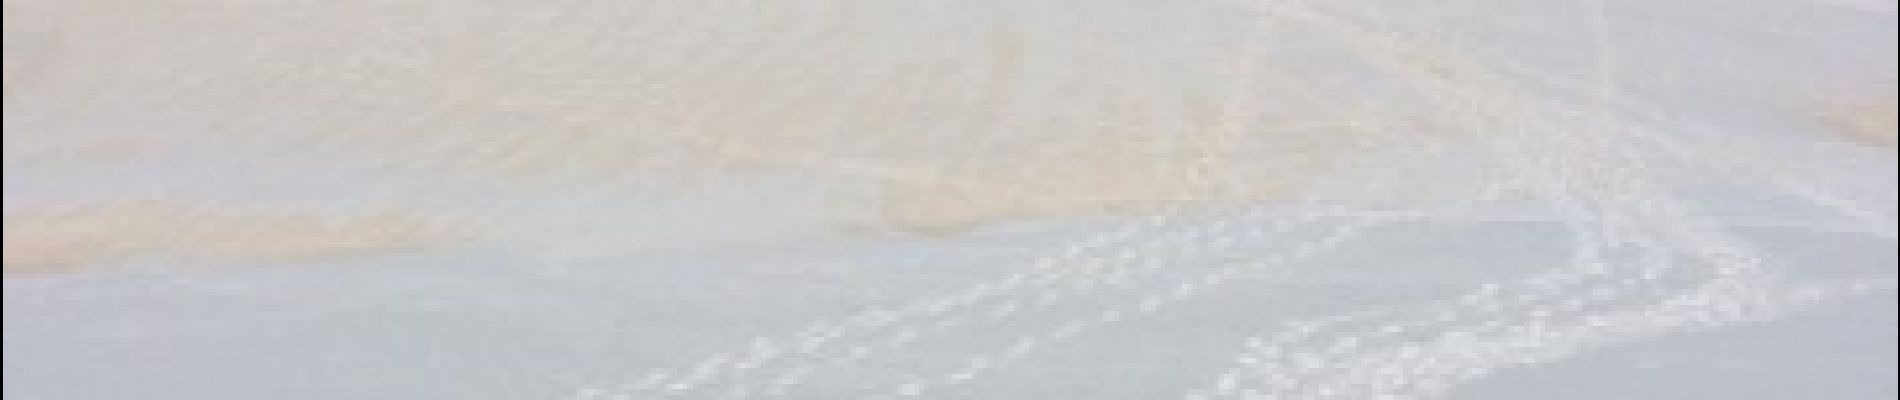 Randonnée Raquettes à neige Beuil -  balade raquette (beuil les launes) - Photo